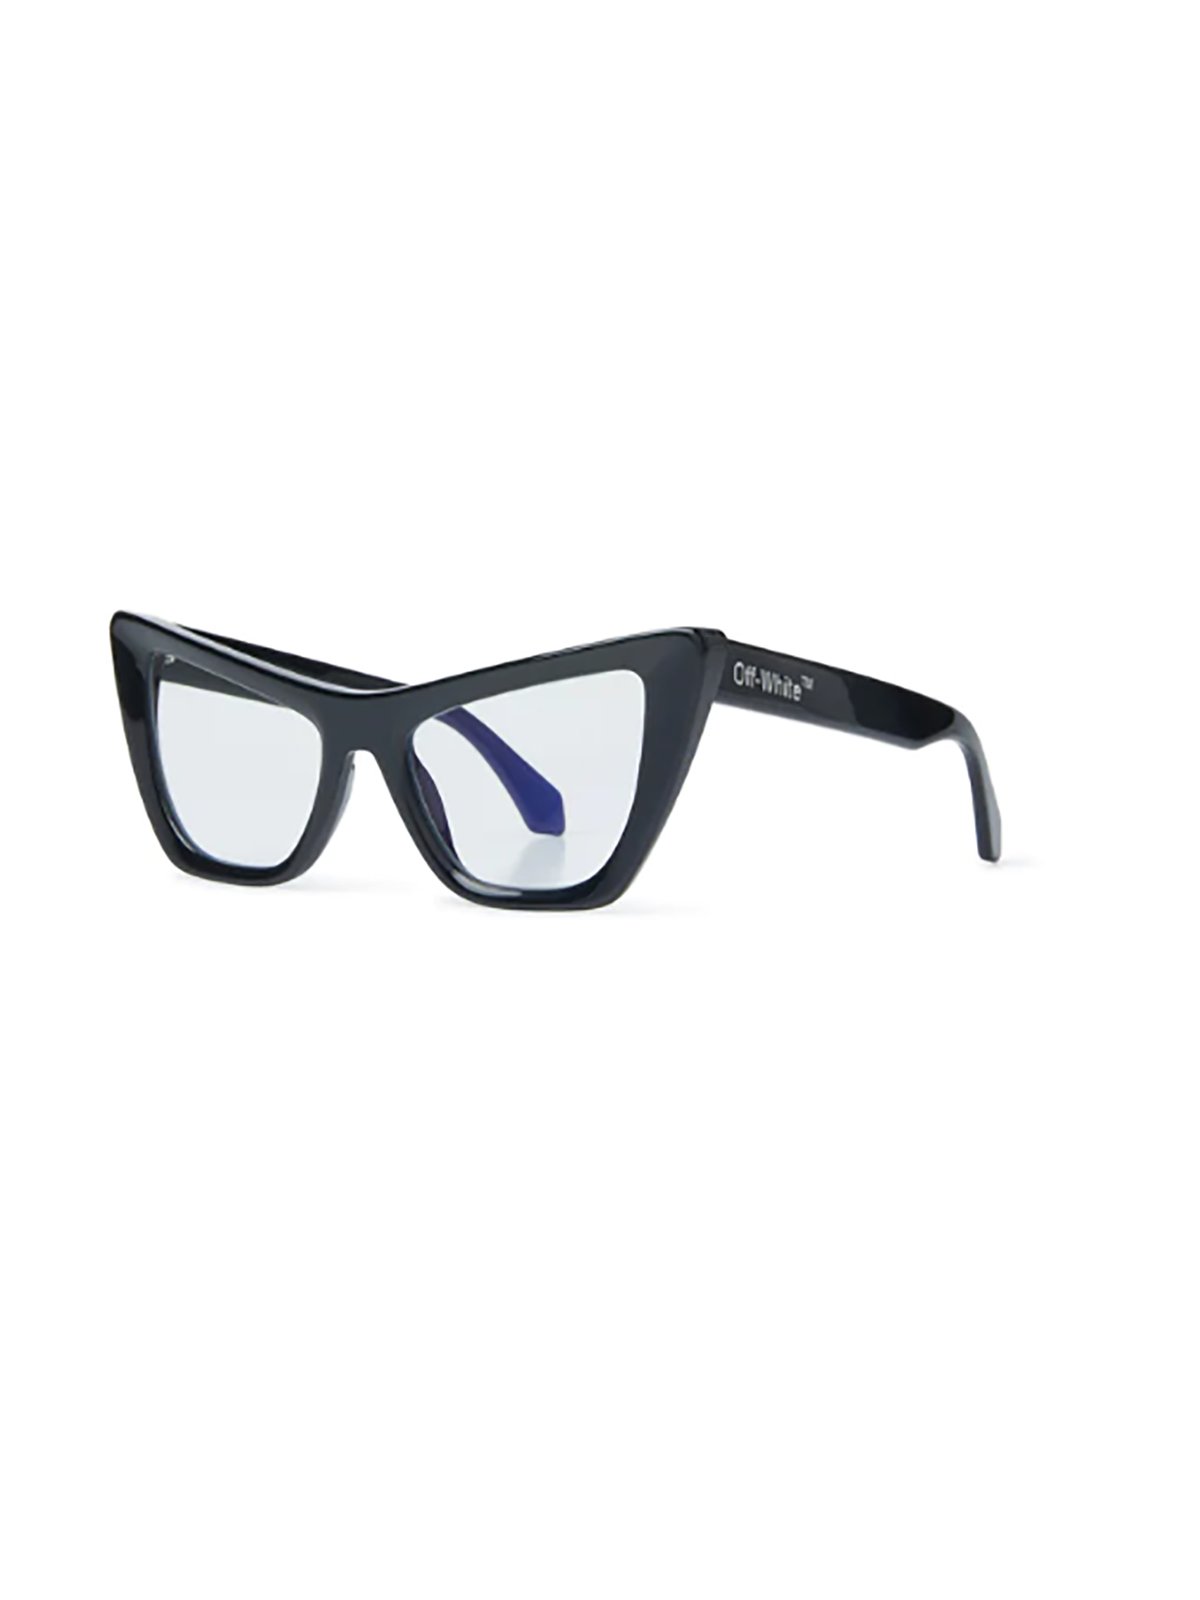 Off-White Cat-Eye Glasses